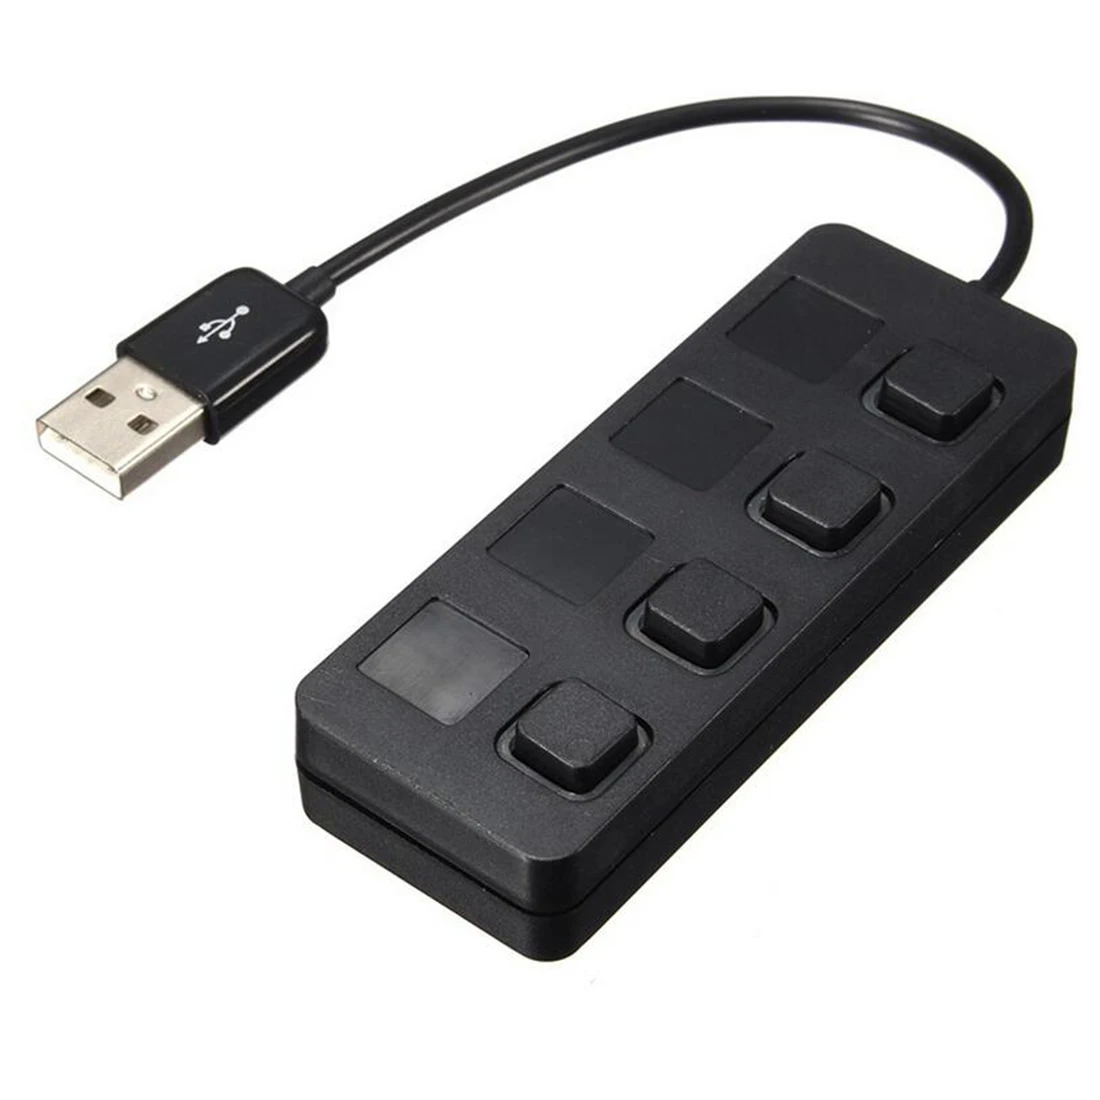 Etmakit 4 Порты светодиодный USB High Скорость 480 Мбит/с адаптер USB HUB с Мощность on/off переключатель для ПК ноутбук